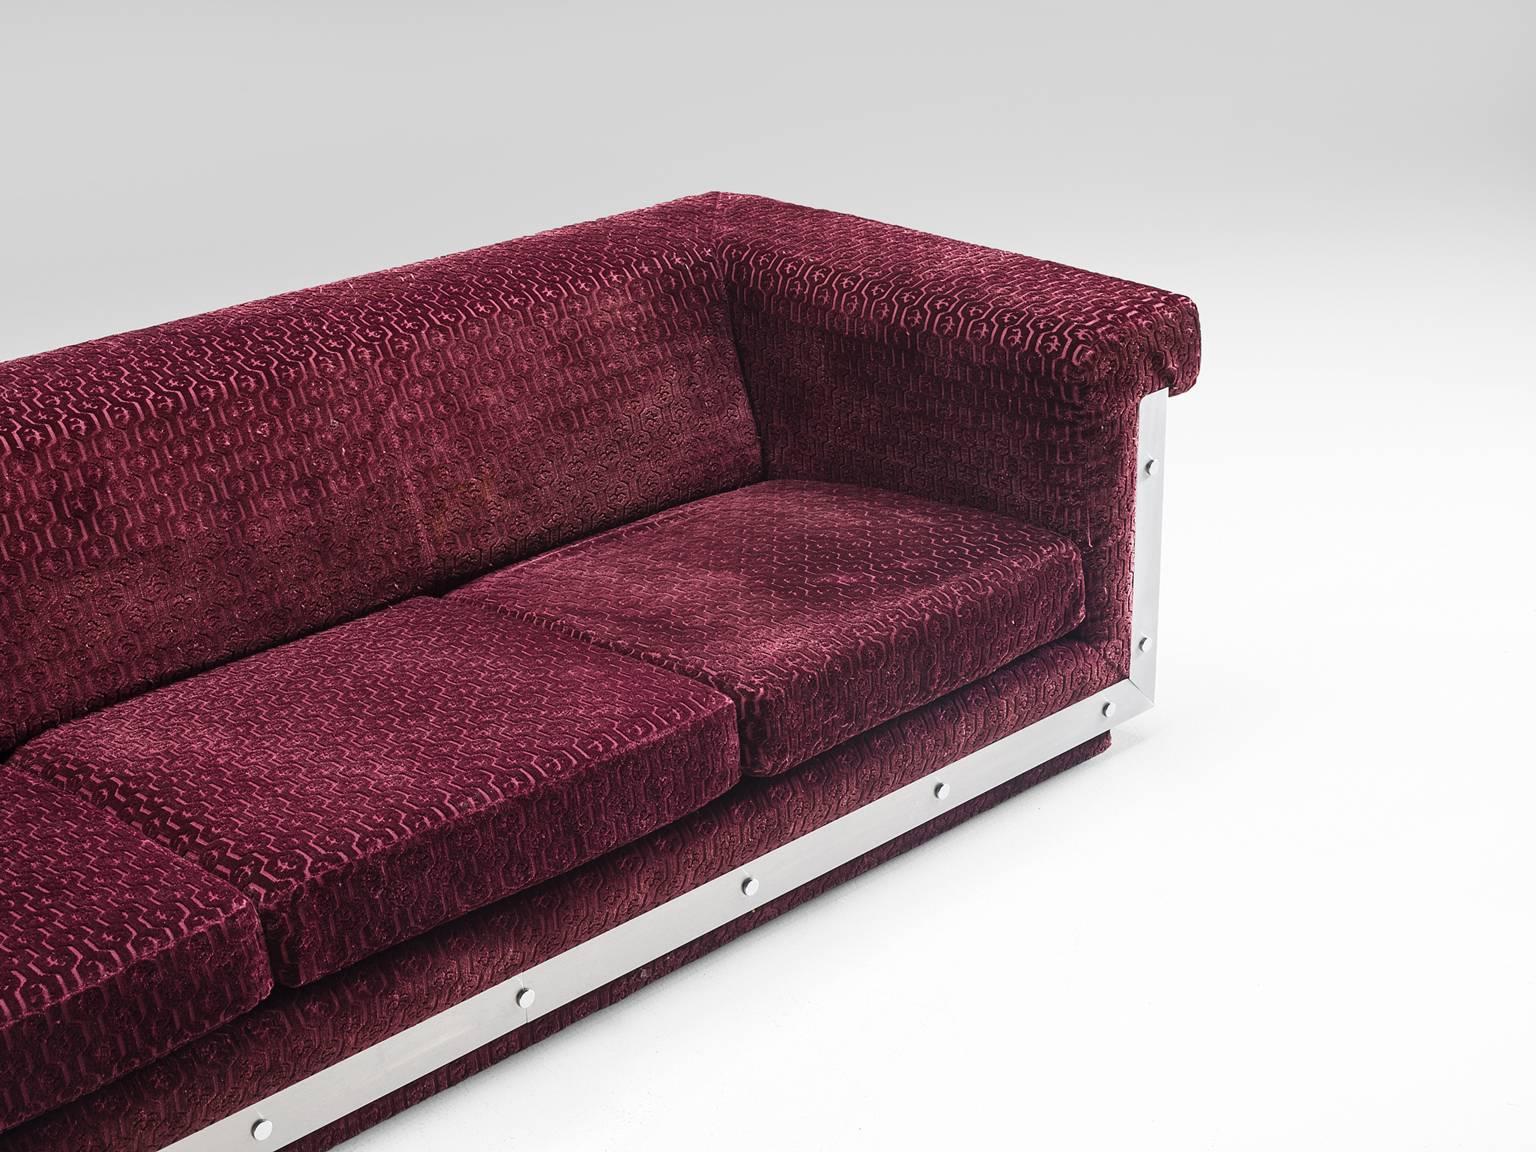 French Sofa in Stainless Steel and Burgundy Velvet Upholstery 4